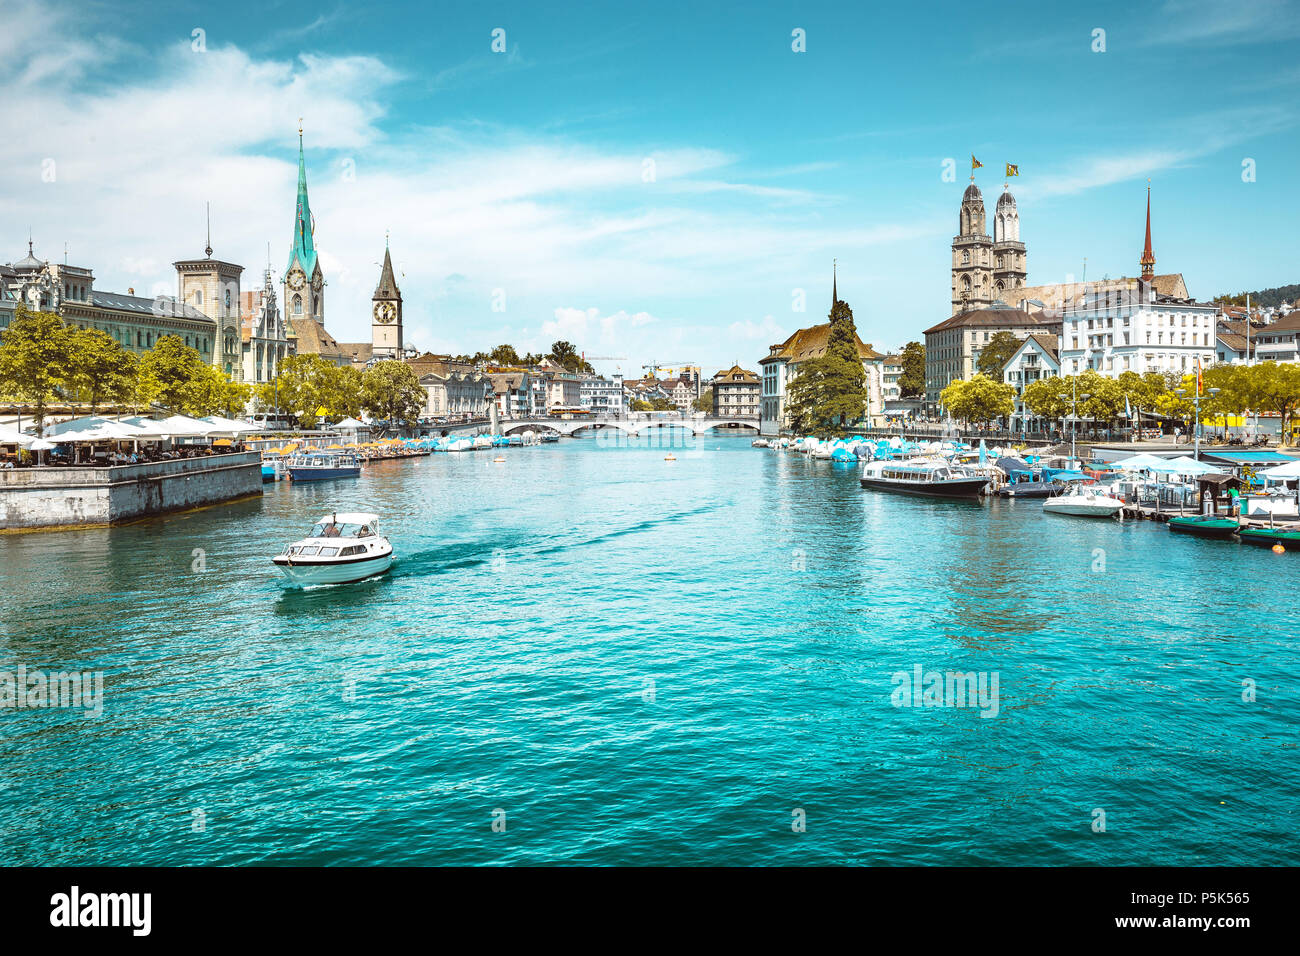 Vue panoramique du centre-ville de Zurich avec les églises et les bateaux sur la magnifique rivière Limmat en été, Canton de Zurich, Suisse Banque D'Images